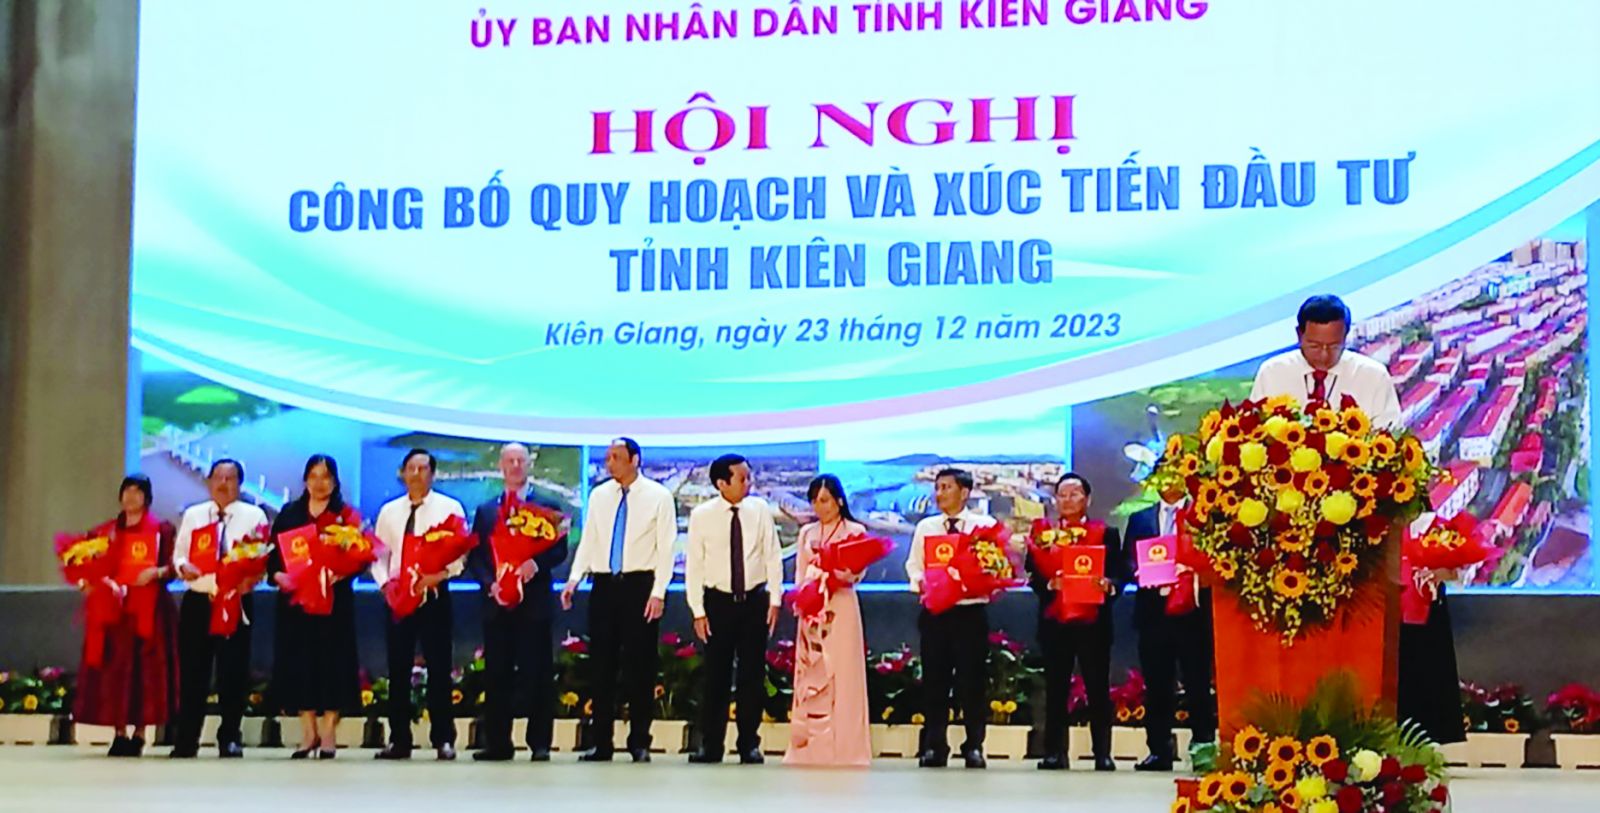  Ngày 23/12, tỉnh Kiên Giang tổ chức hội nghị công bố quy hoạch tỉnh Kiên Giang thời kỳ 2021 - 2030, tầm nhìn đến năm 2050 và xúc tiến đầu tư.